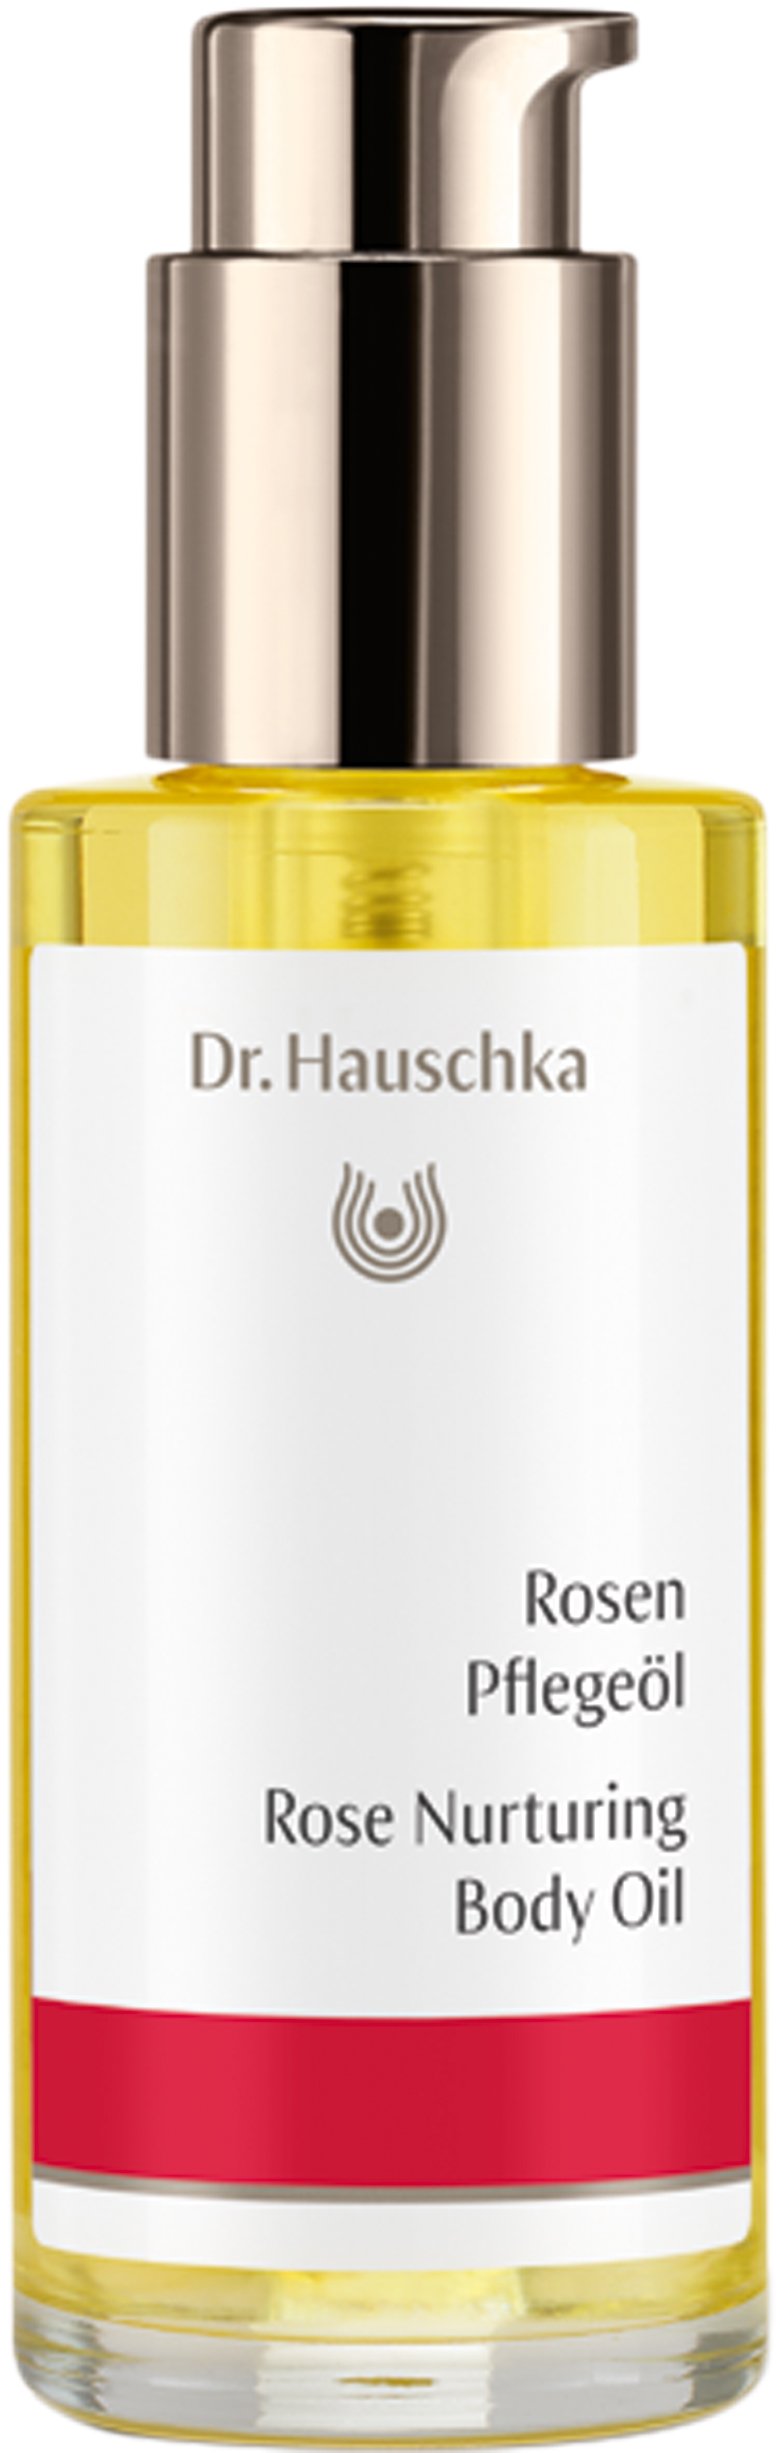 Dr. Hauschka - Rose Nurturing Body Oil 75 ml